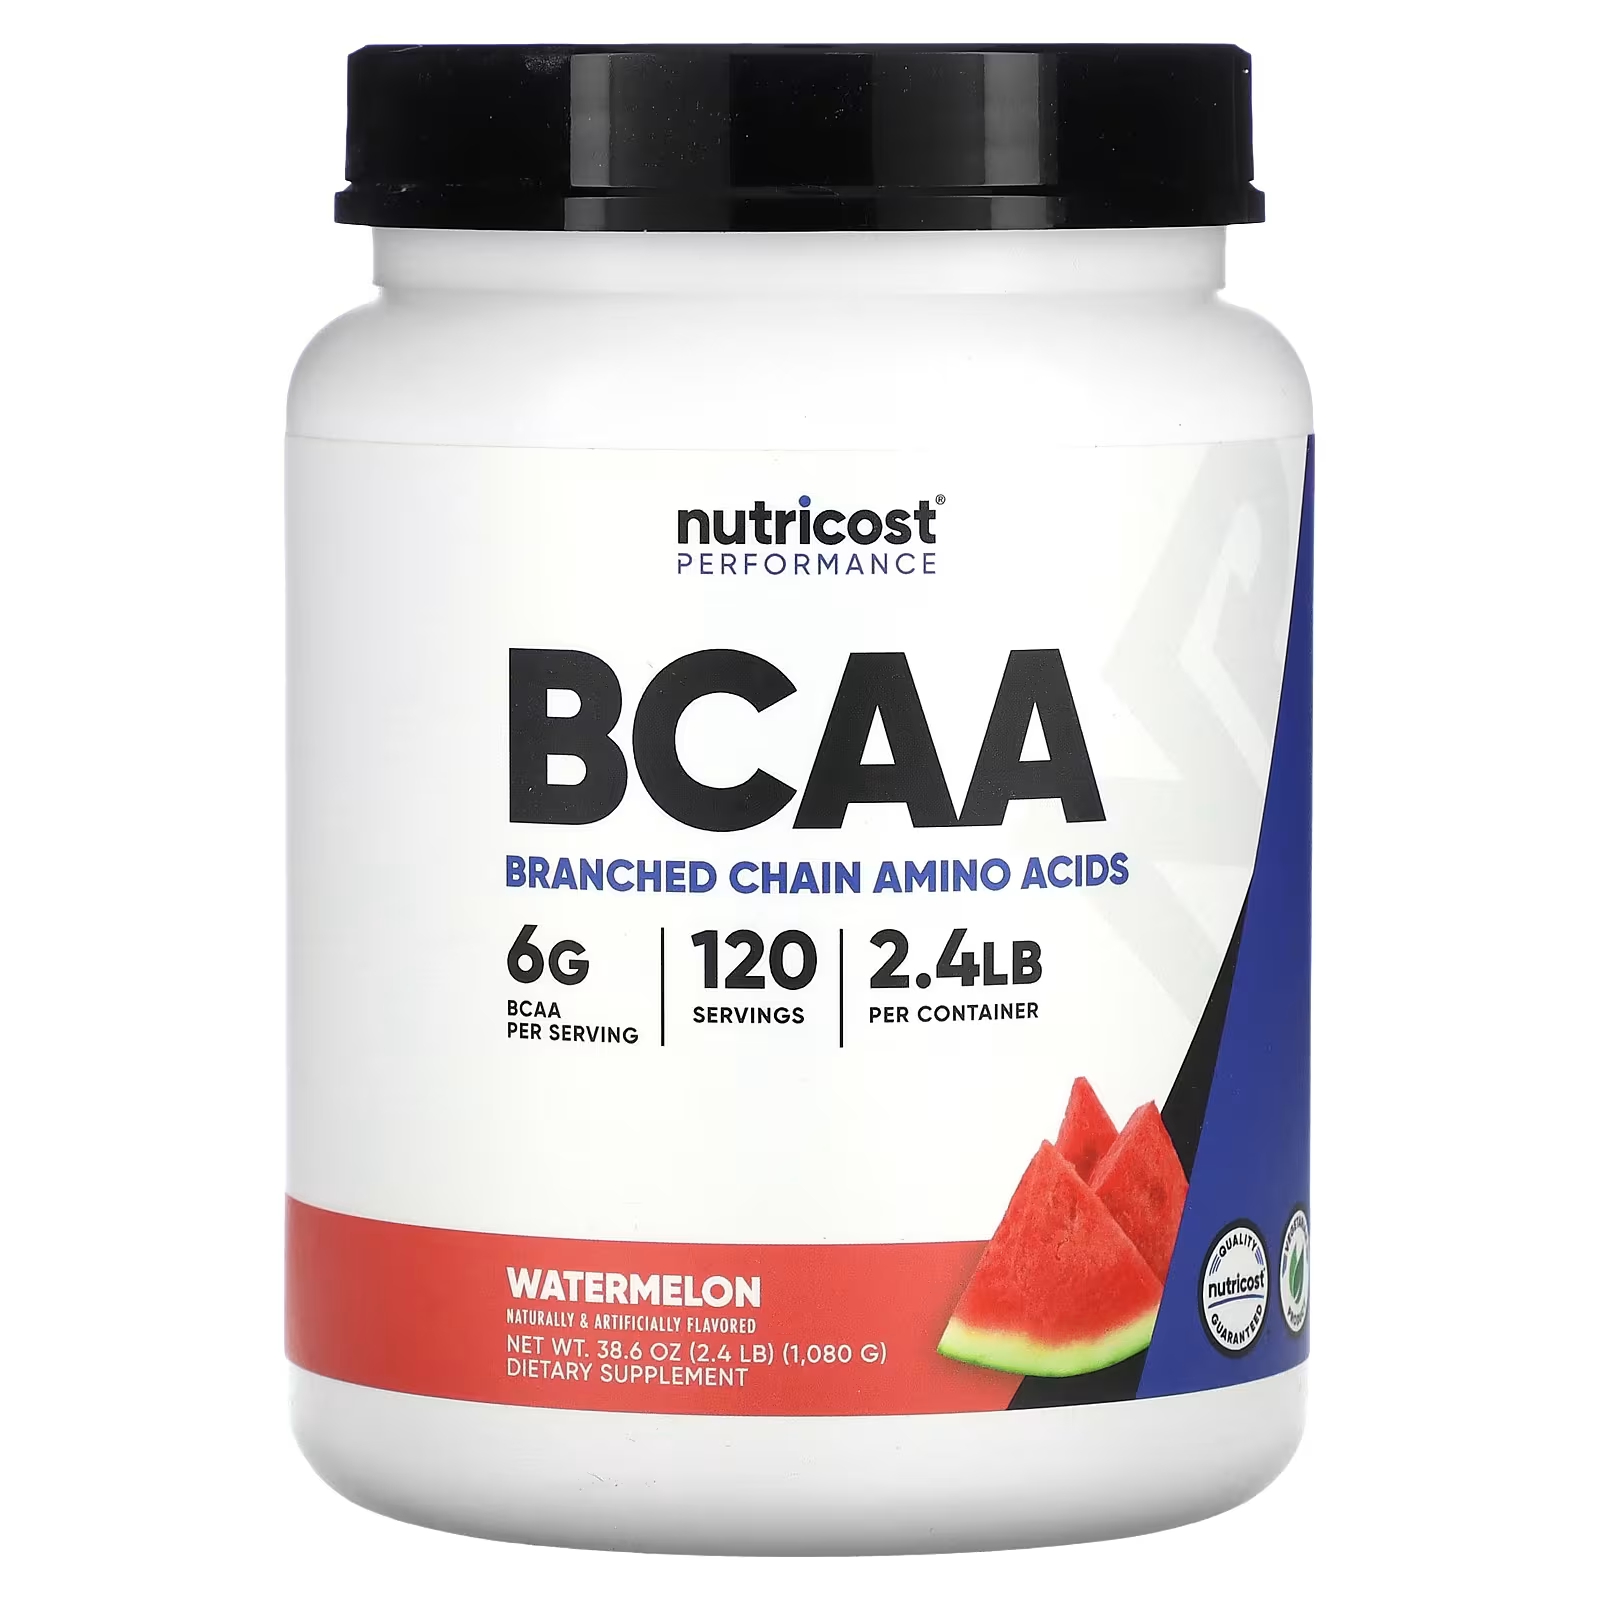 Пищевая добавка Nutricost Performance BCAA арбуз, 1080 г пищевая добавка nutricost performance eaa 249 г